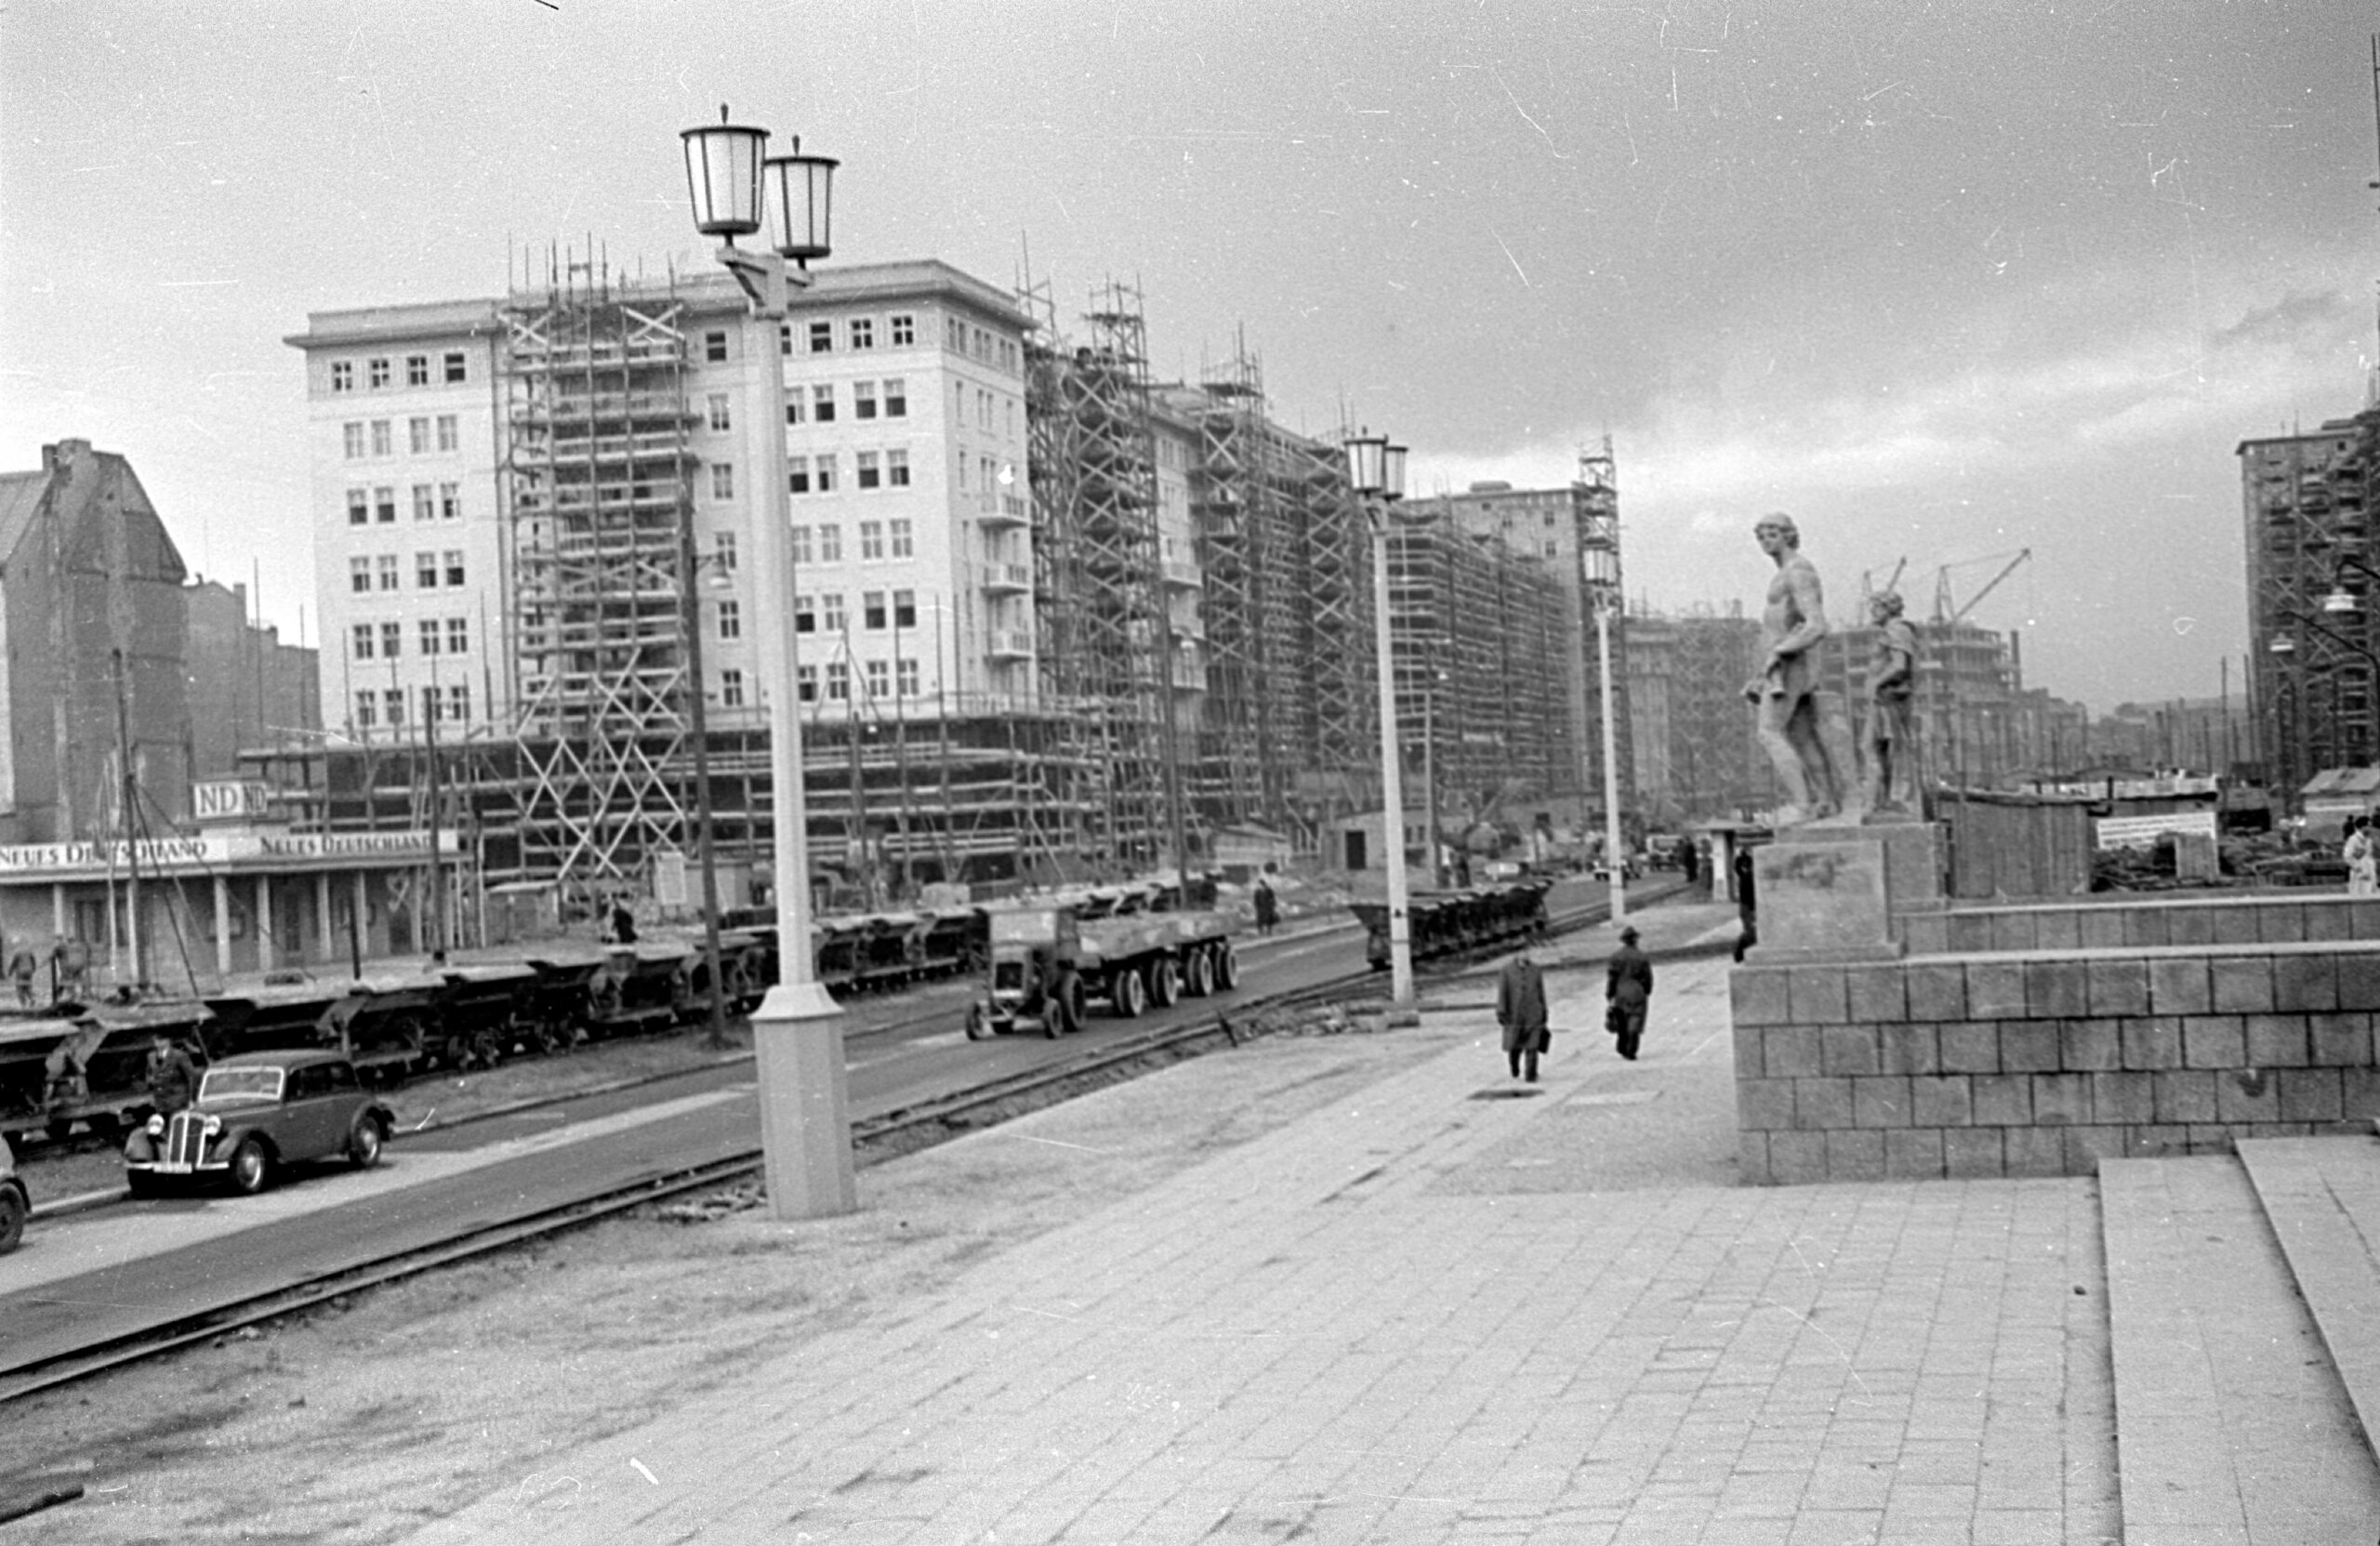 Bauarbeiten in der Stalinallee, die später zur Karl-Marx-Allee wurde, Aufnahme um 1953. Foto: Imago/frontalvision.com